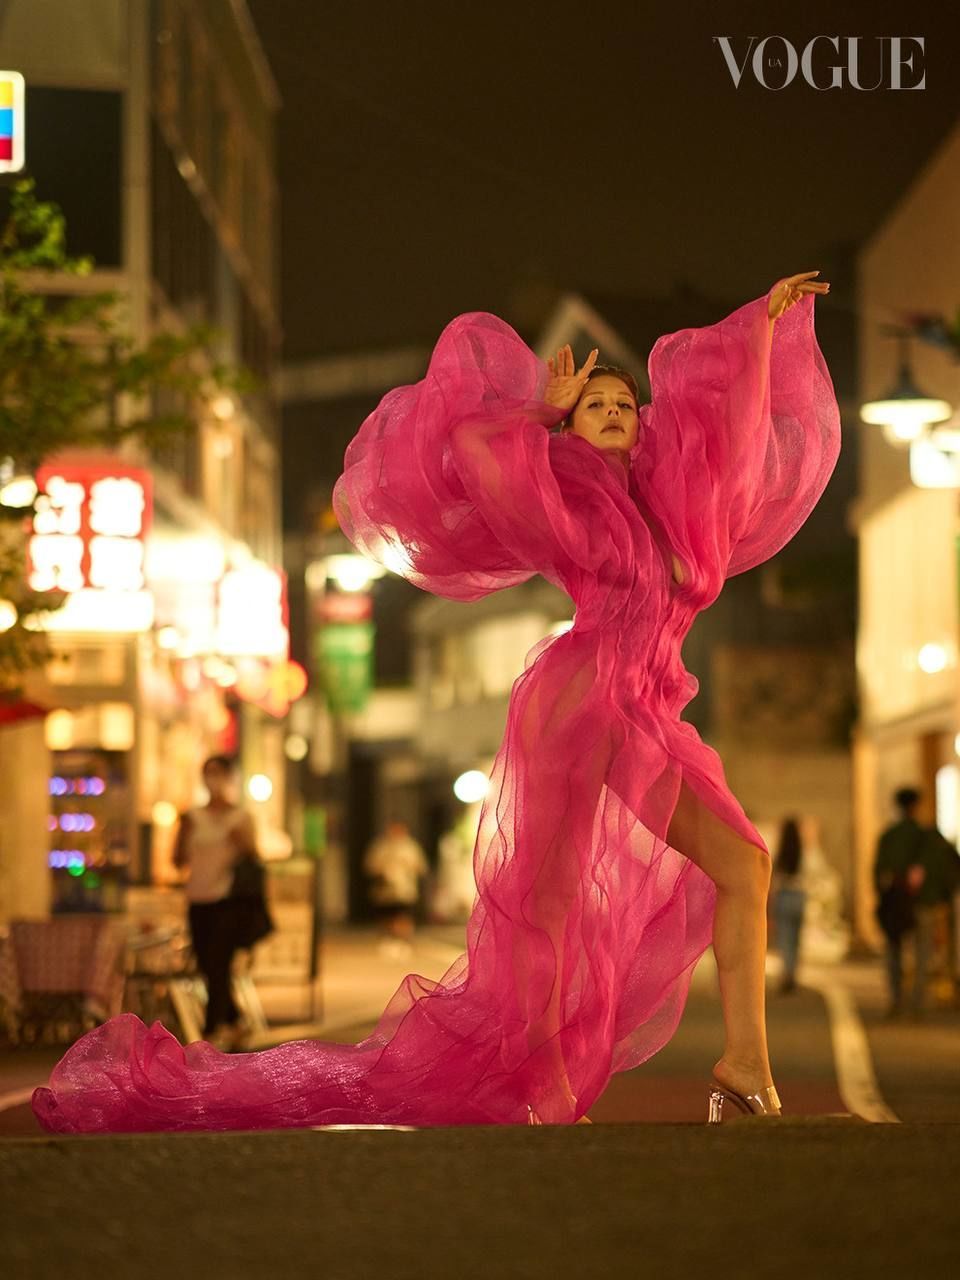 “Ось це форми“: Тіна Кароль у прозорих сукнях від українського бренду знялася на вулицях Токіо